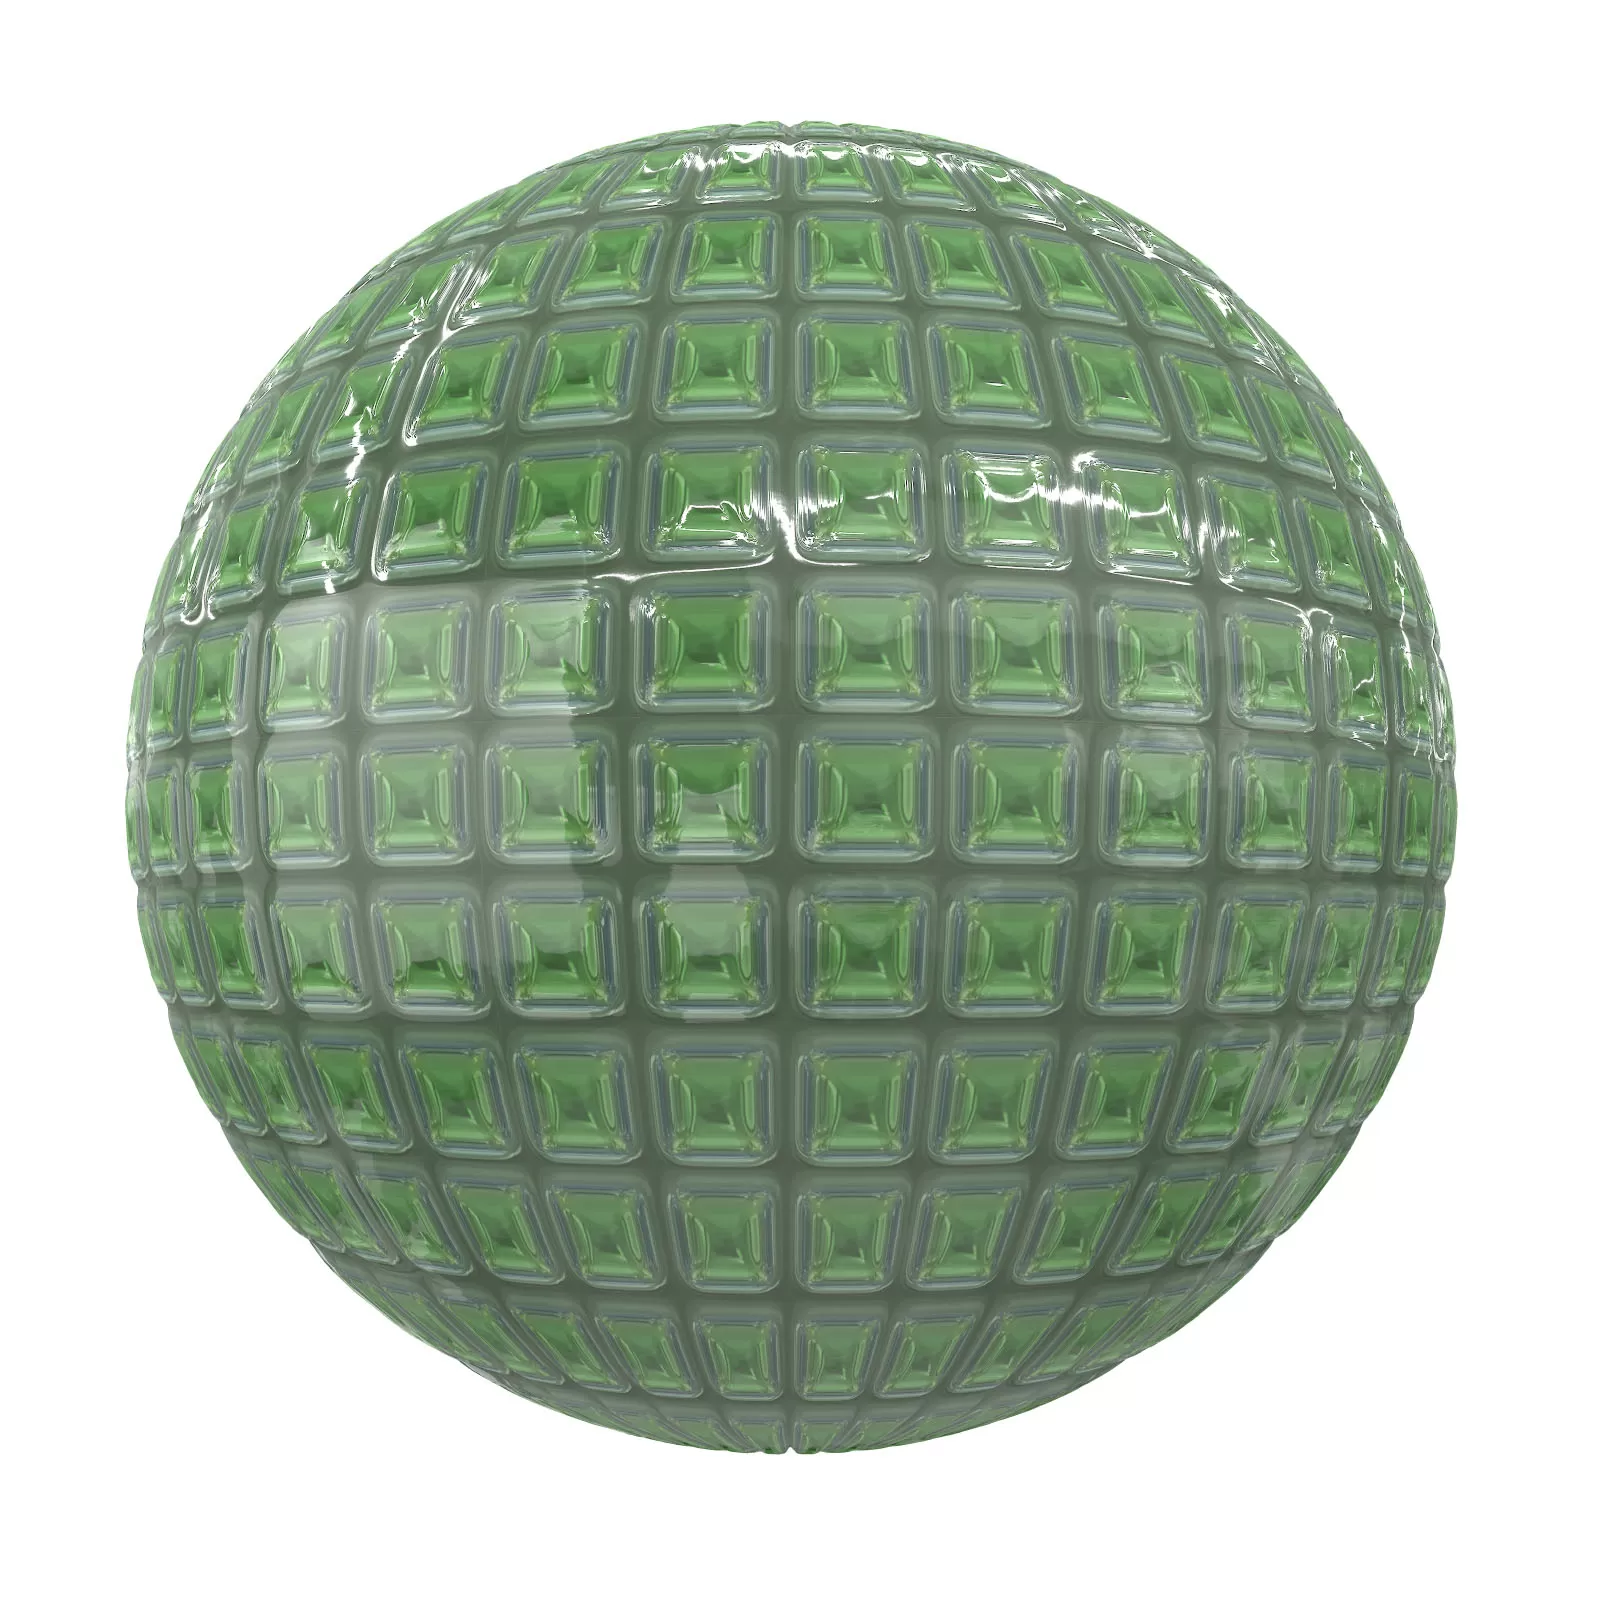 PBR CGAXIS TEXTURES – TILES – Shiny Green Tiles